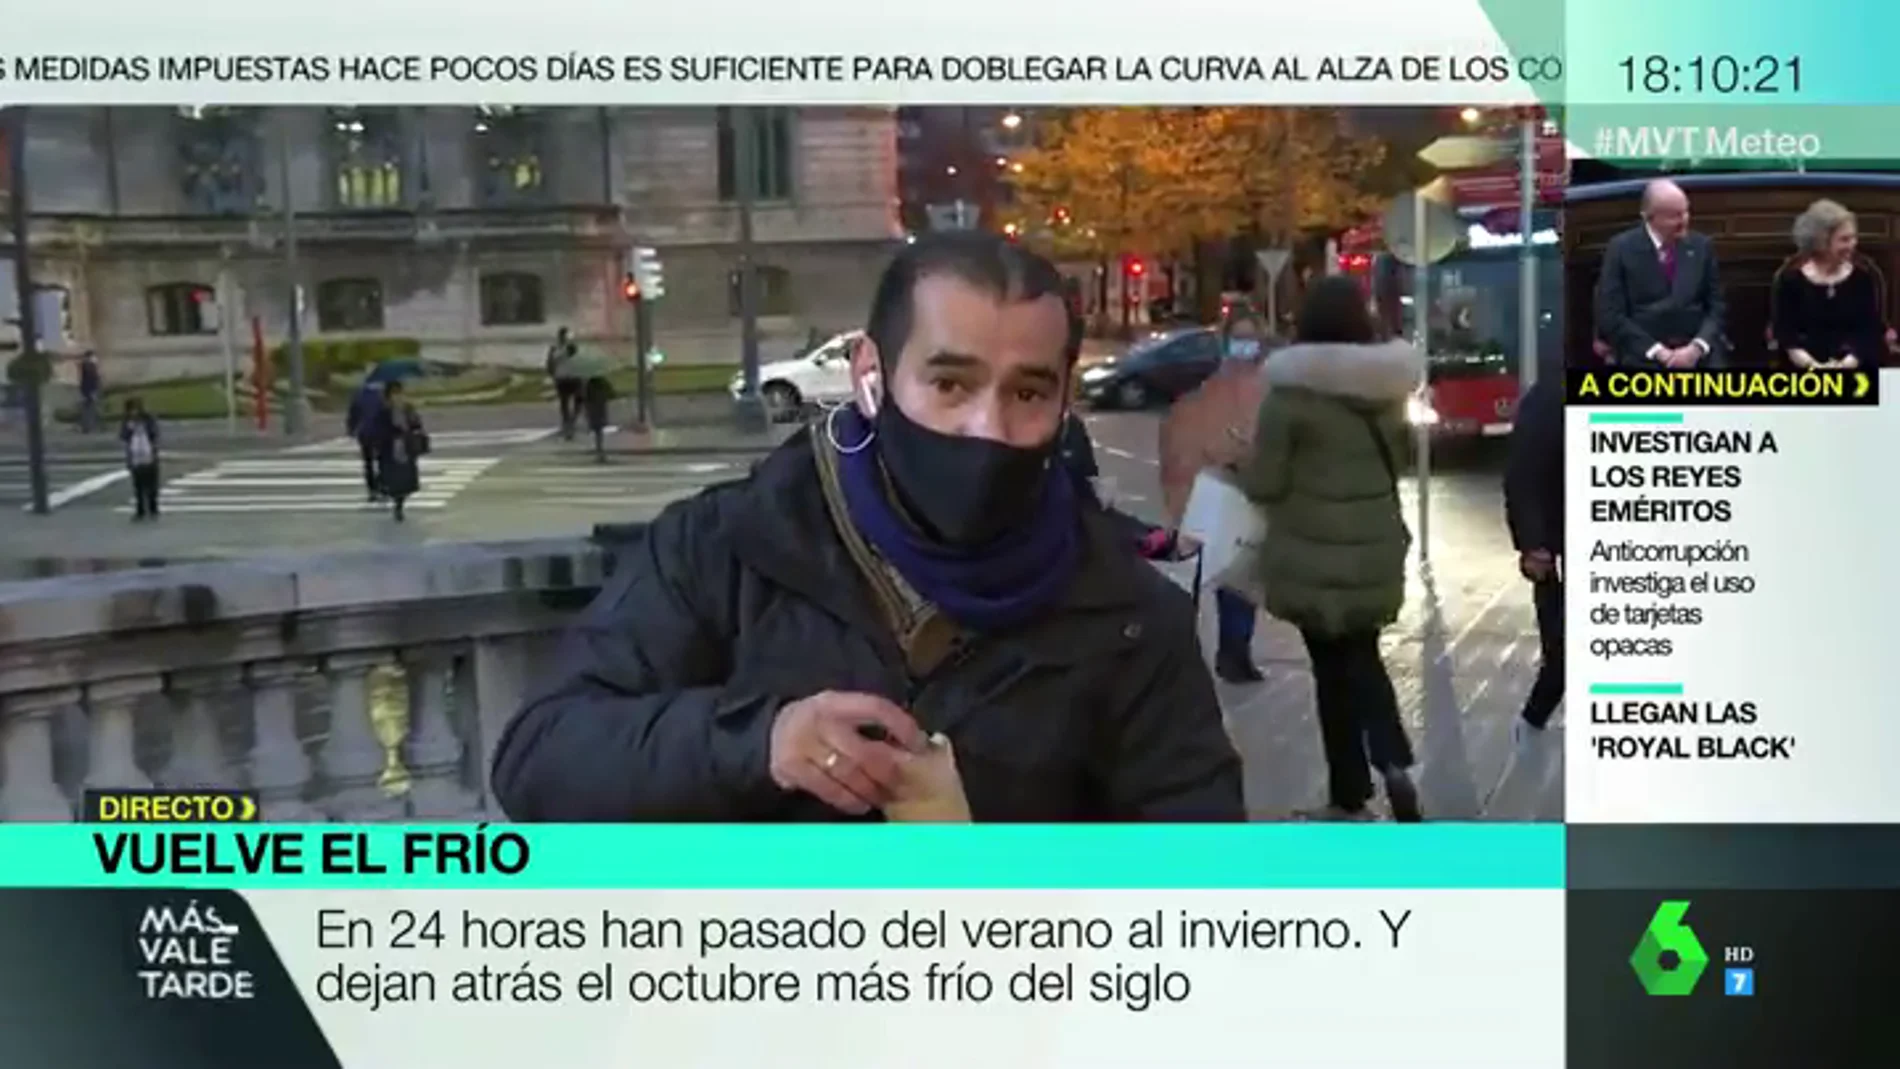 La curiosa despedida de un directo del reportero Miguel Ambrosio a costa de las castañas asadas: "Paga laSexta"